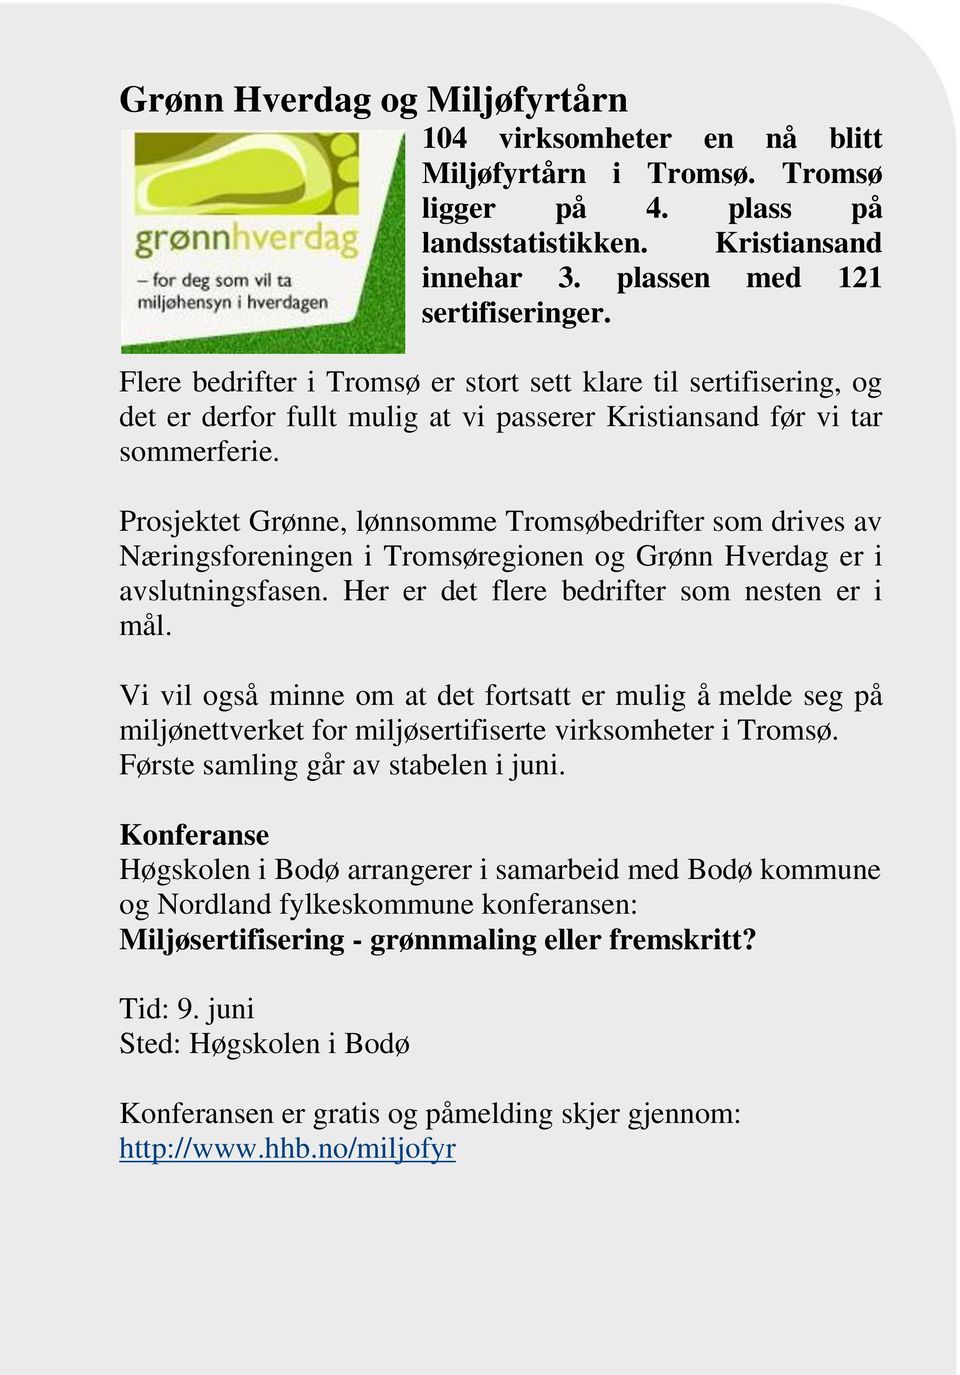 Prosjektet Grønne, lønnsomme Tromsøbedrifter som drives av Næringsforeningen i Tromsøregionen og Grønn Hverdag er i avslutningsfasen. Her er det flere bedrifter som nesten er i mål.